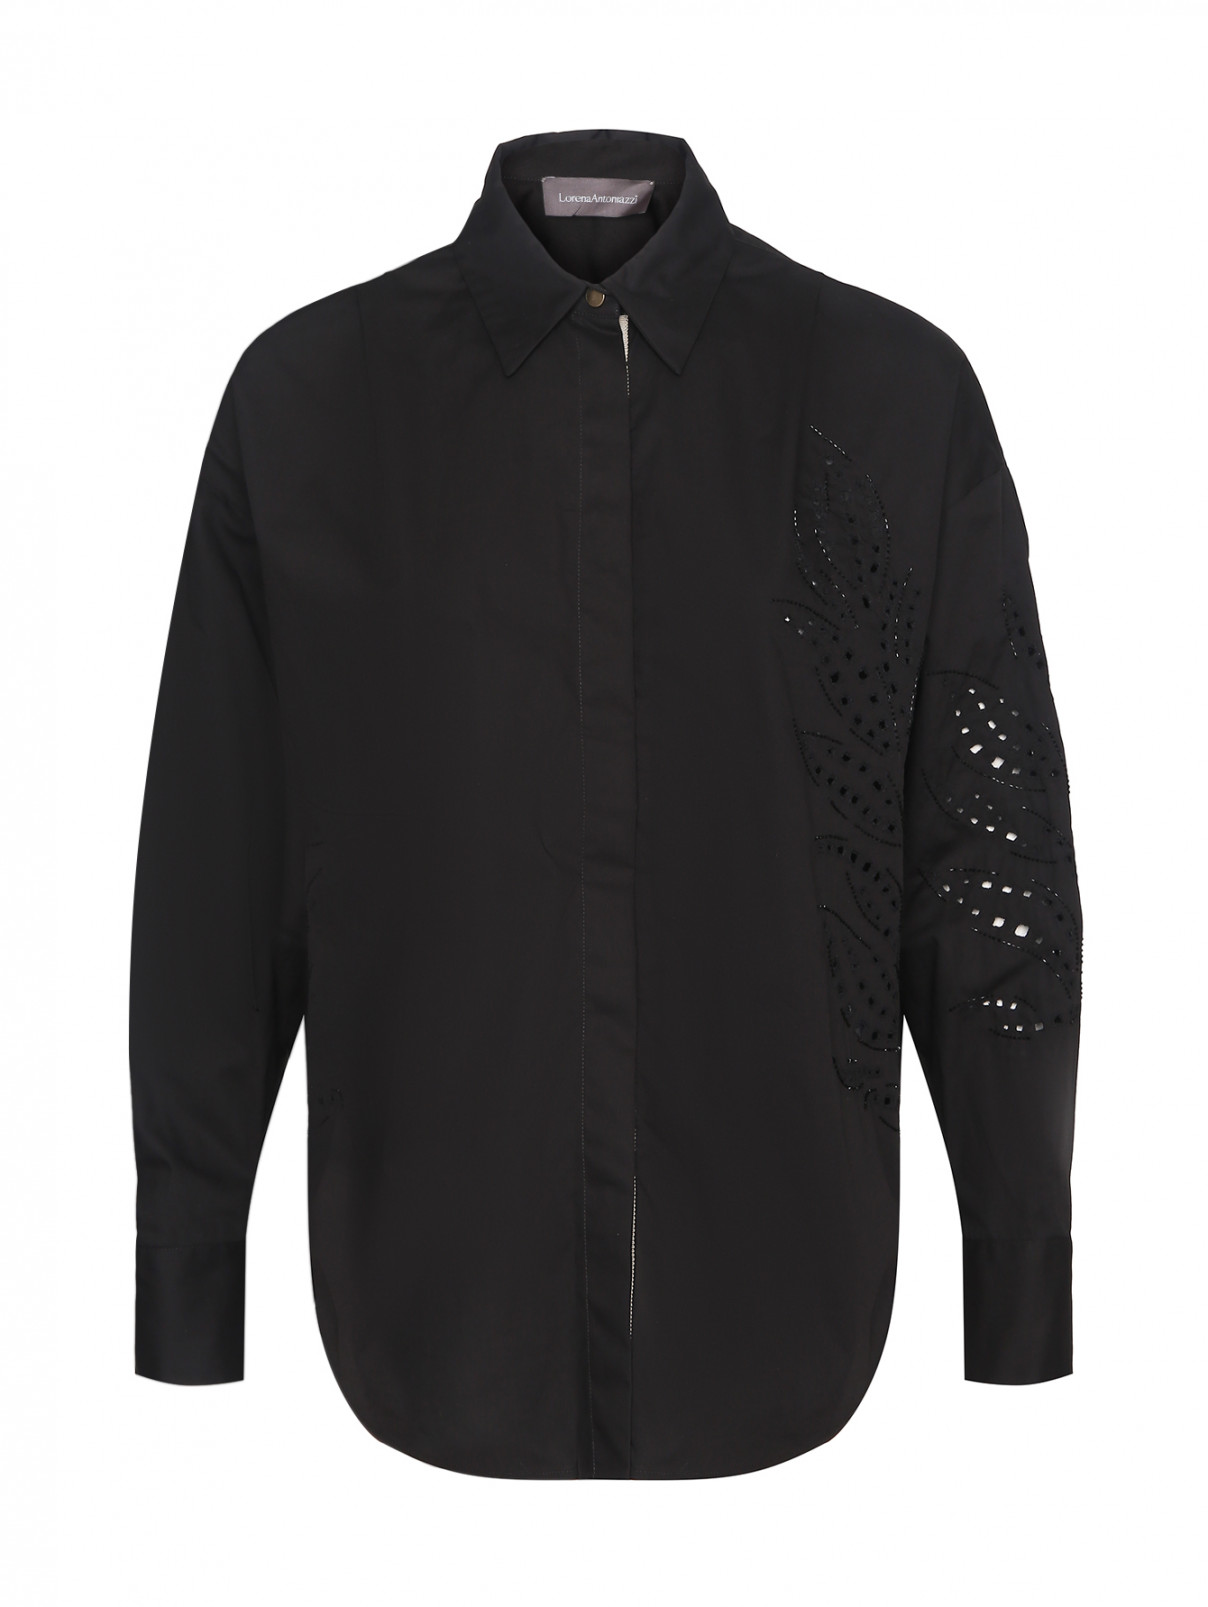 Рубашка с вышивкой бисером Lorena Antoniazzi  –  Общий вид  – Цвет:  Черный